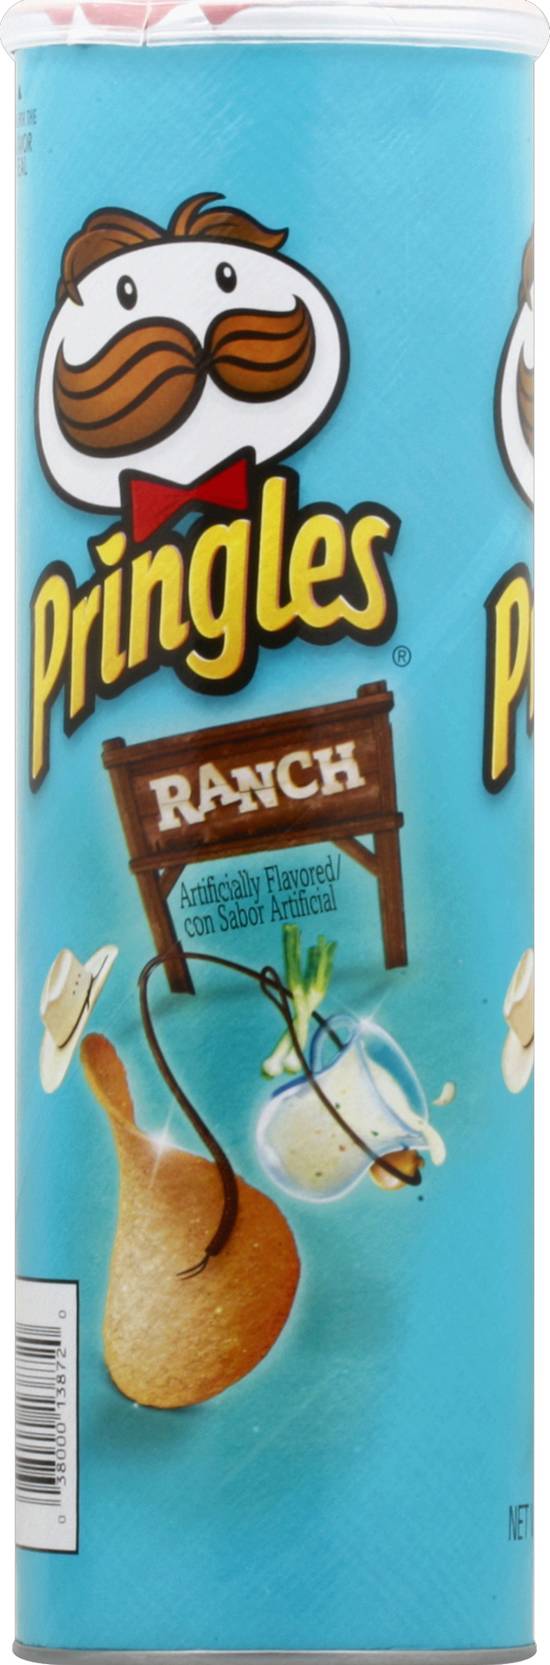 Pringles Ranch Artificiallicially Flavored Potato Crisps